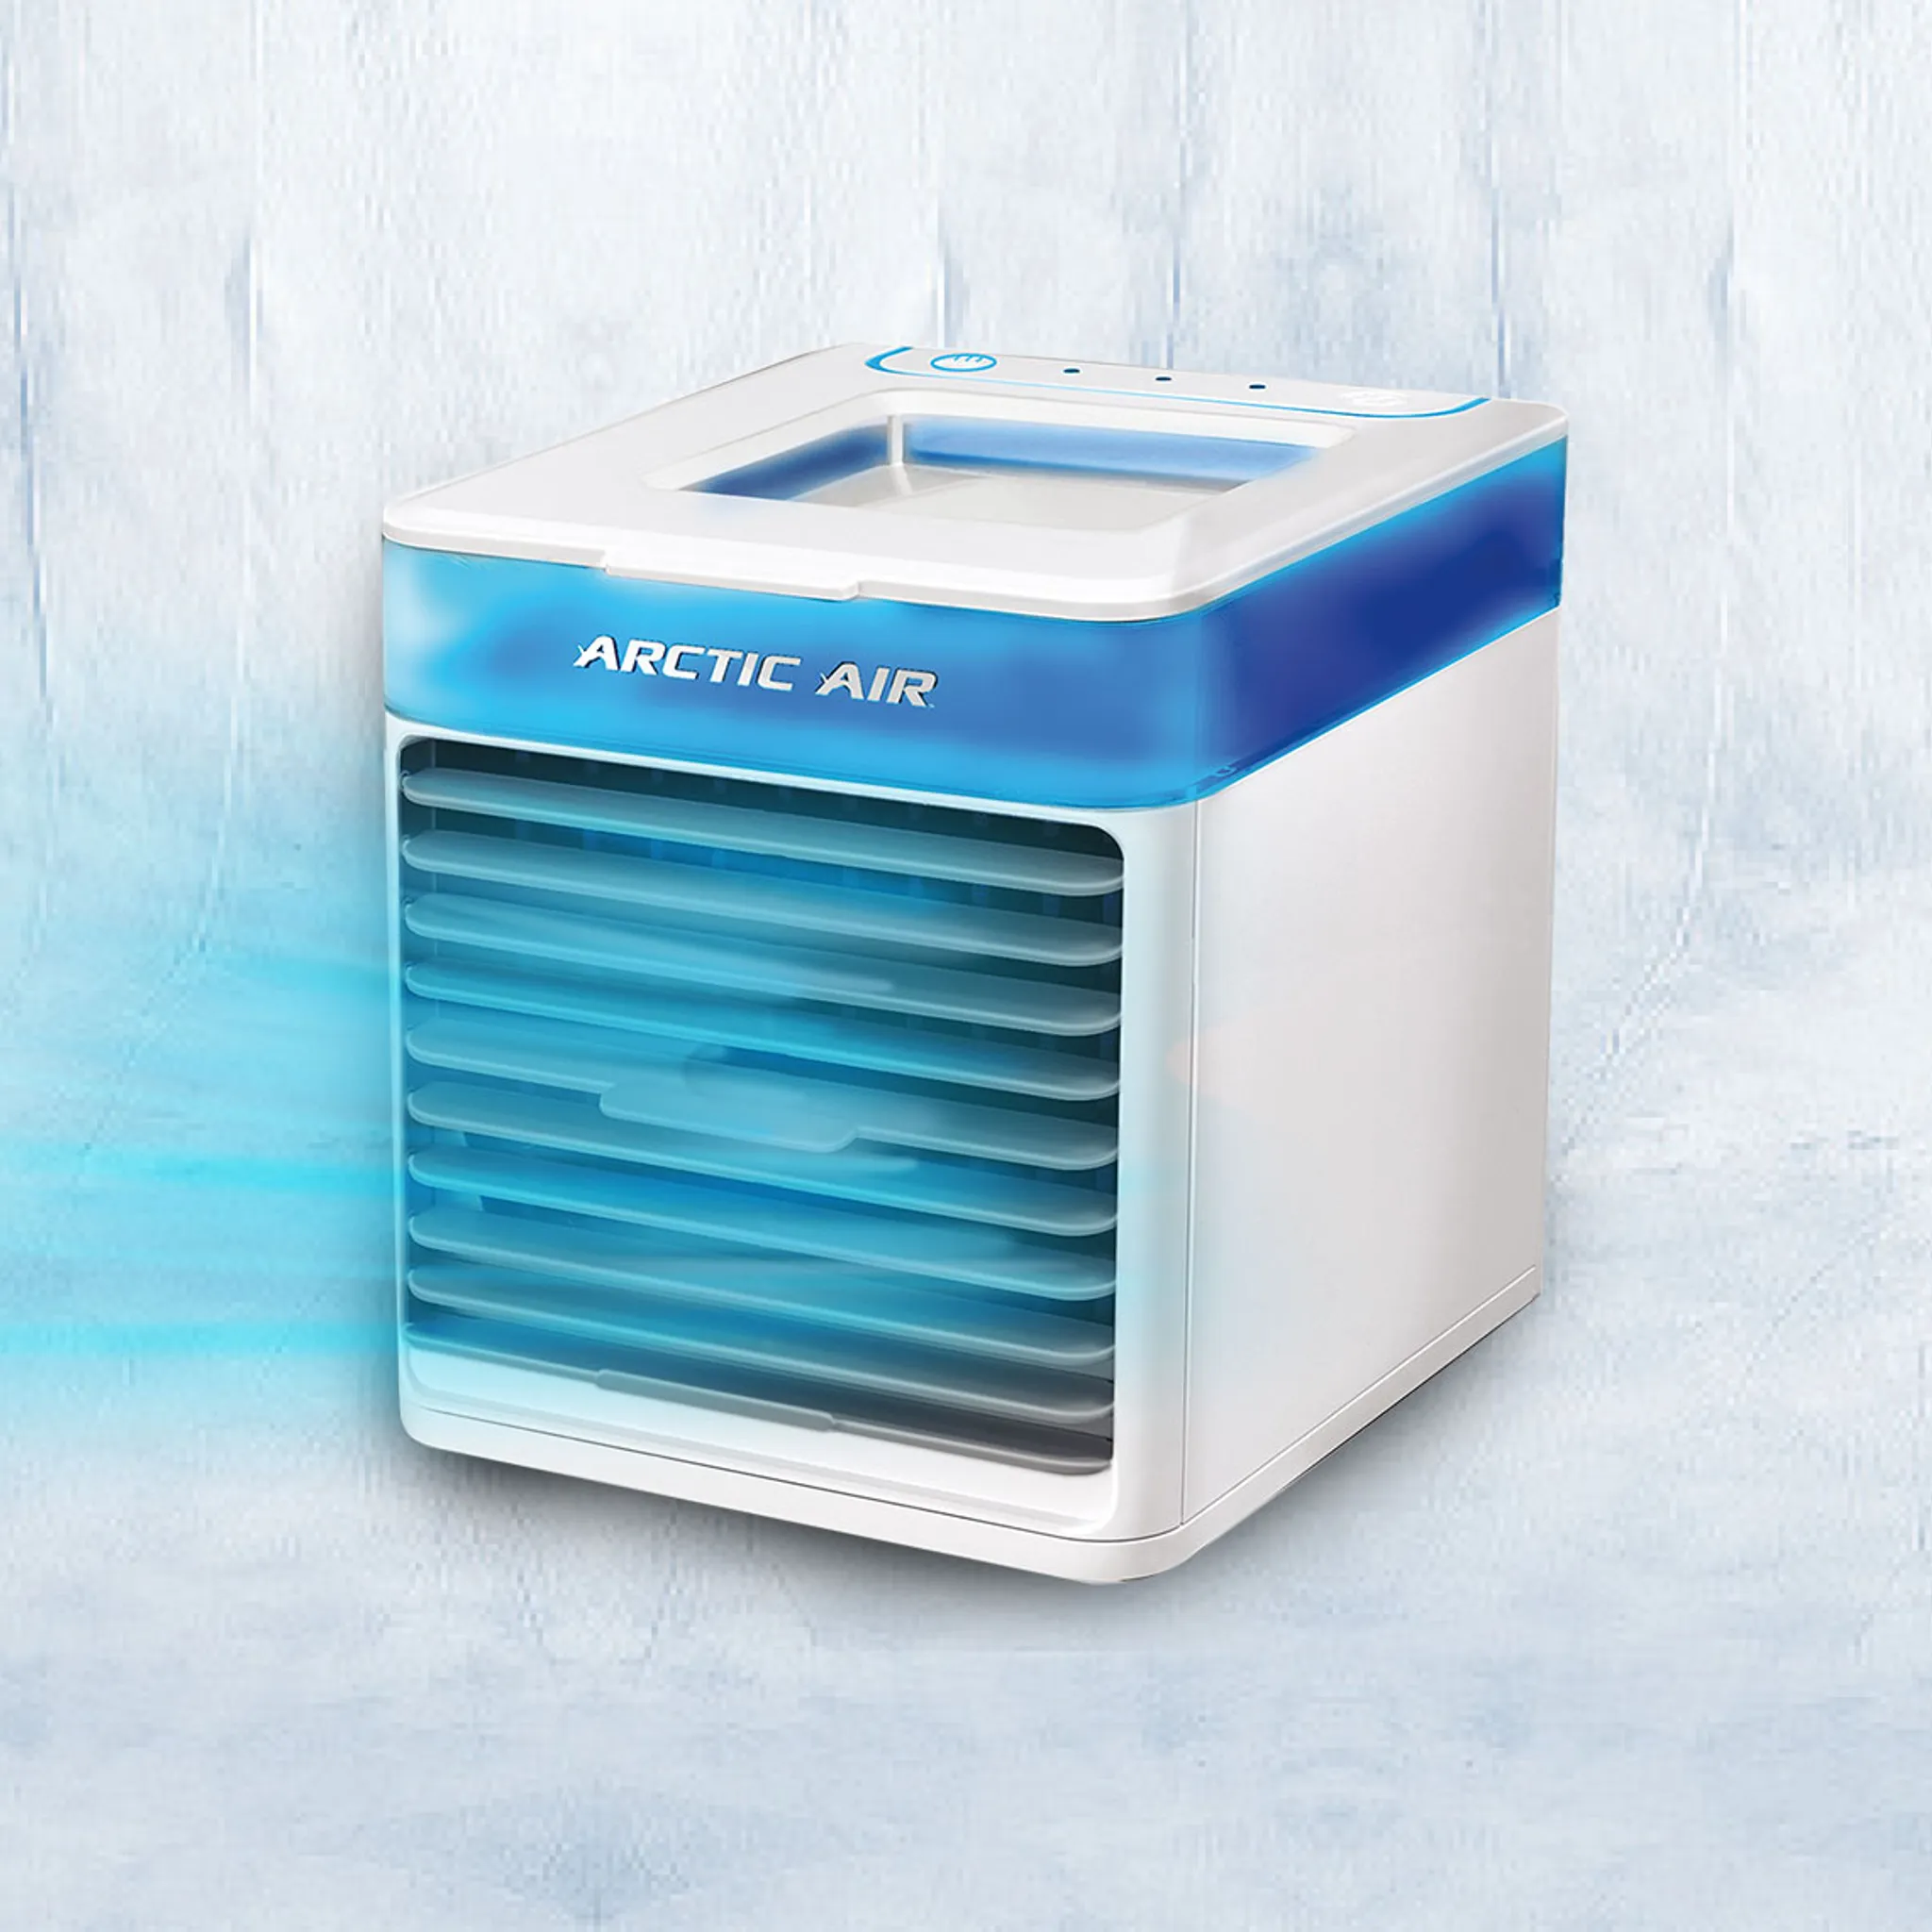 Küchenartikel & Haushaltsartikel Haushaltsgeräte Klima und Heizgeräte Luftregulierung Luftreiniger Energiesparende Verdunstungskühlung mit 